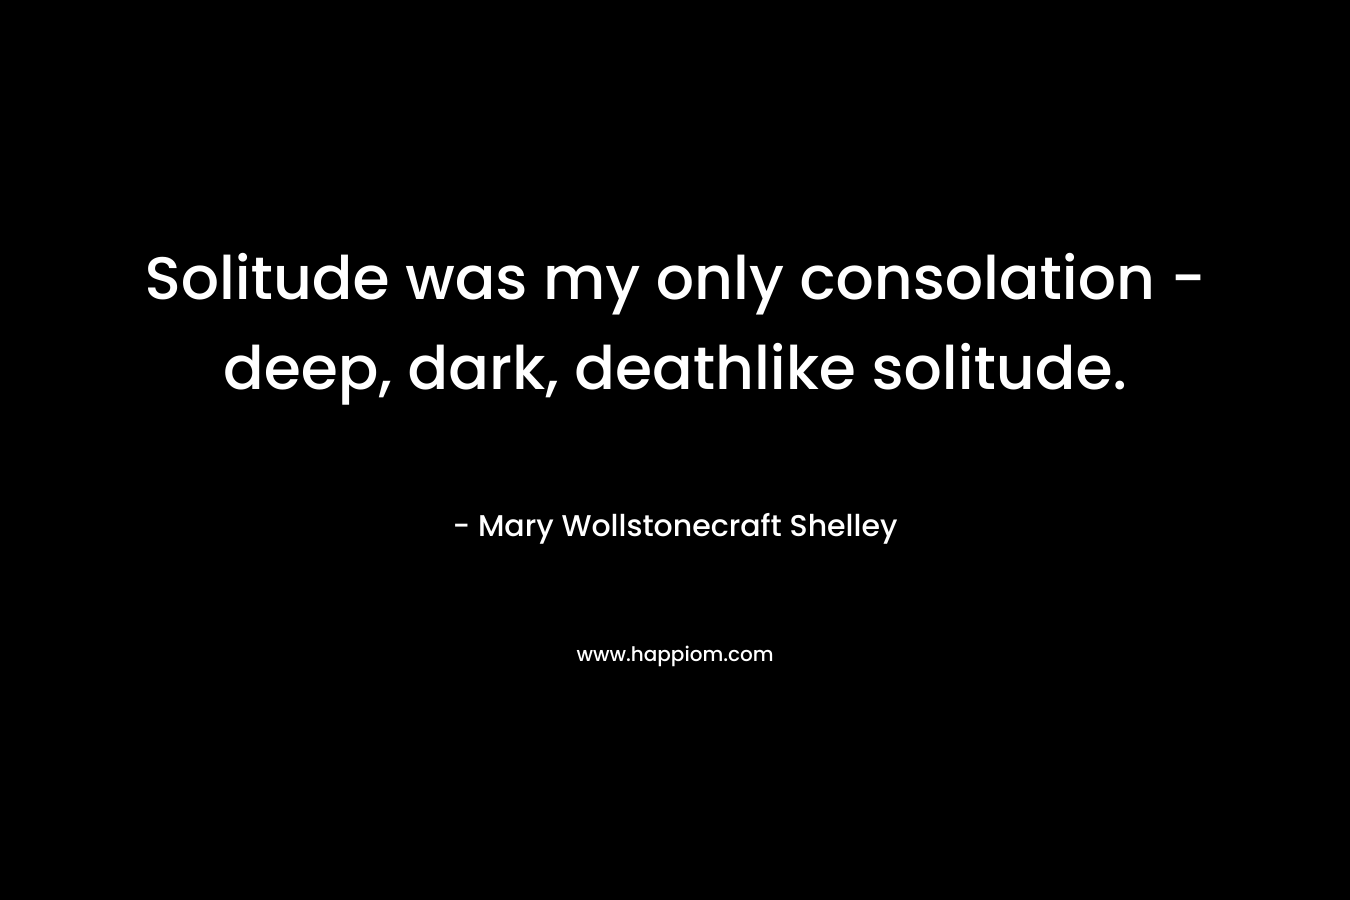 Solitude was my only consolation - deep, dark, deathlike solitude.